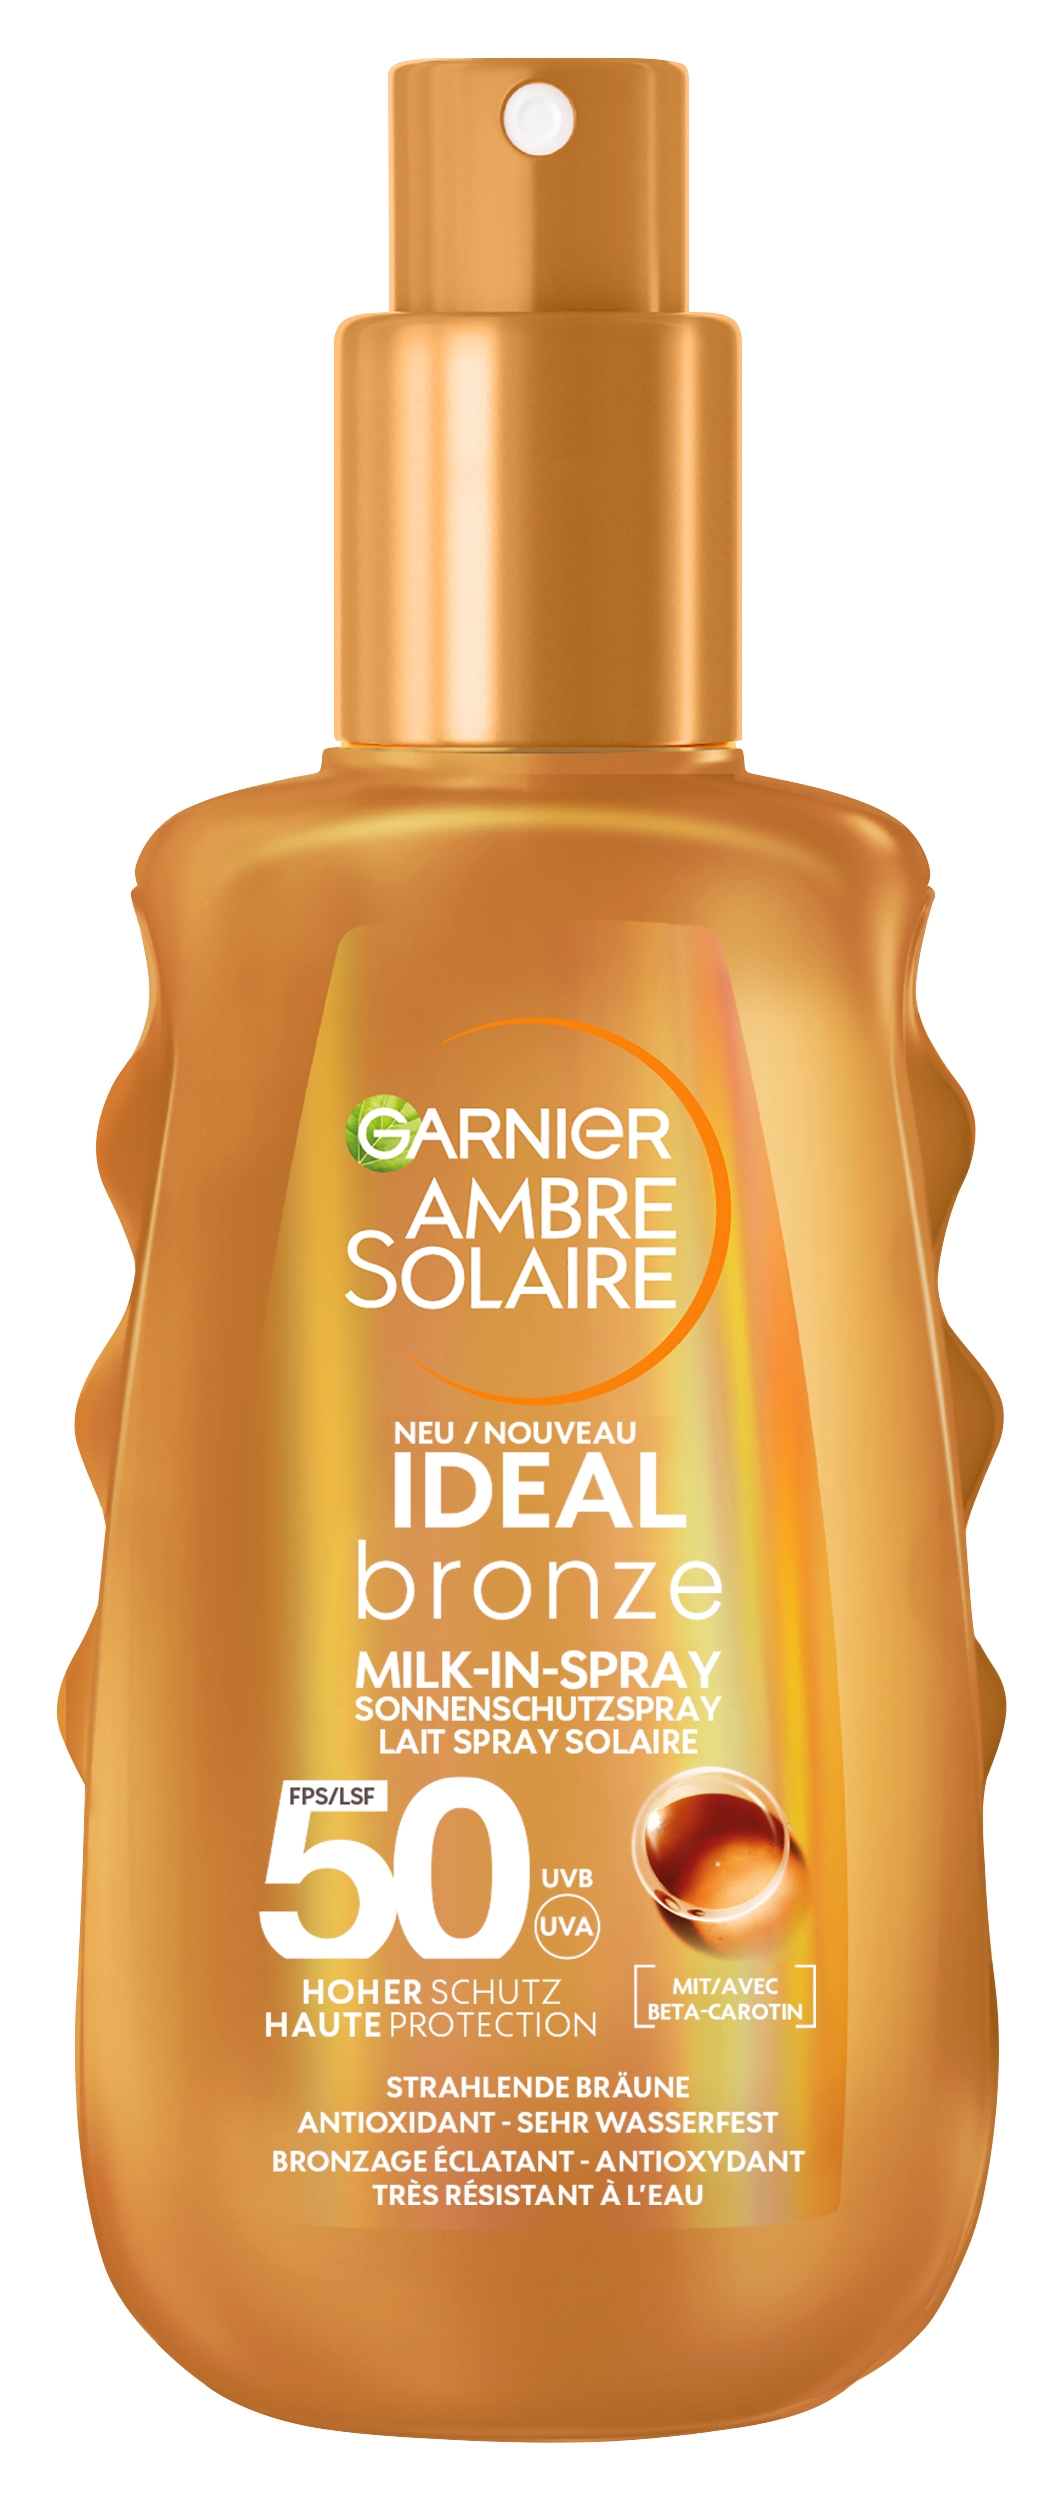 Produktbild von Ambre Solaire - Ideal Bronze Milk-in-Spray Sonnenschutzspray mit LSF 50